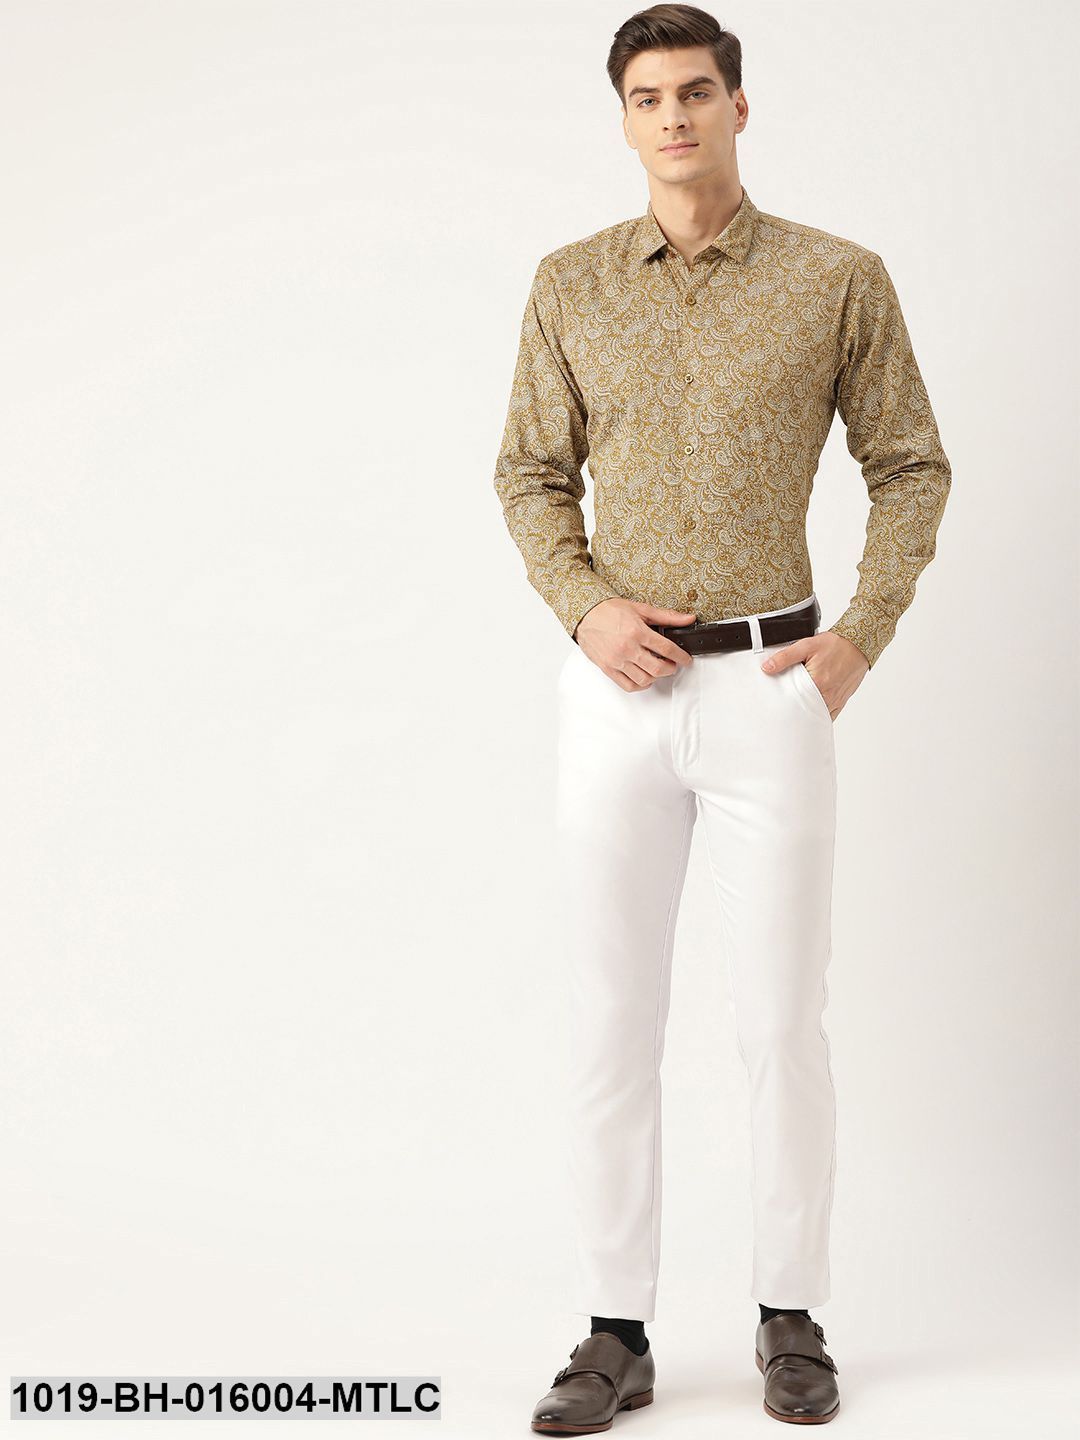 Men's Cotton Metallic Gold & White Printed Formal Shirt - Sojanya